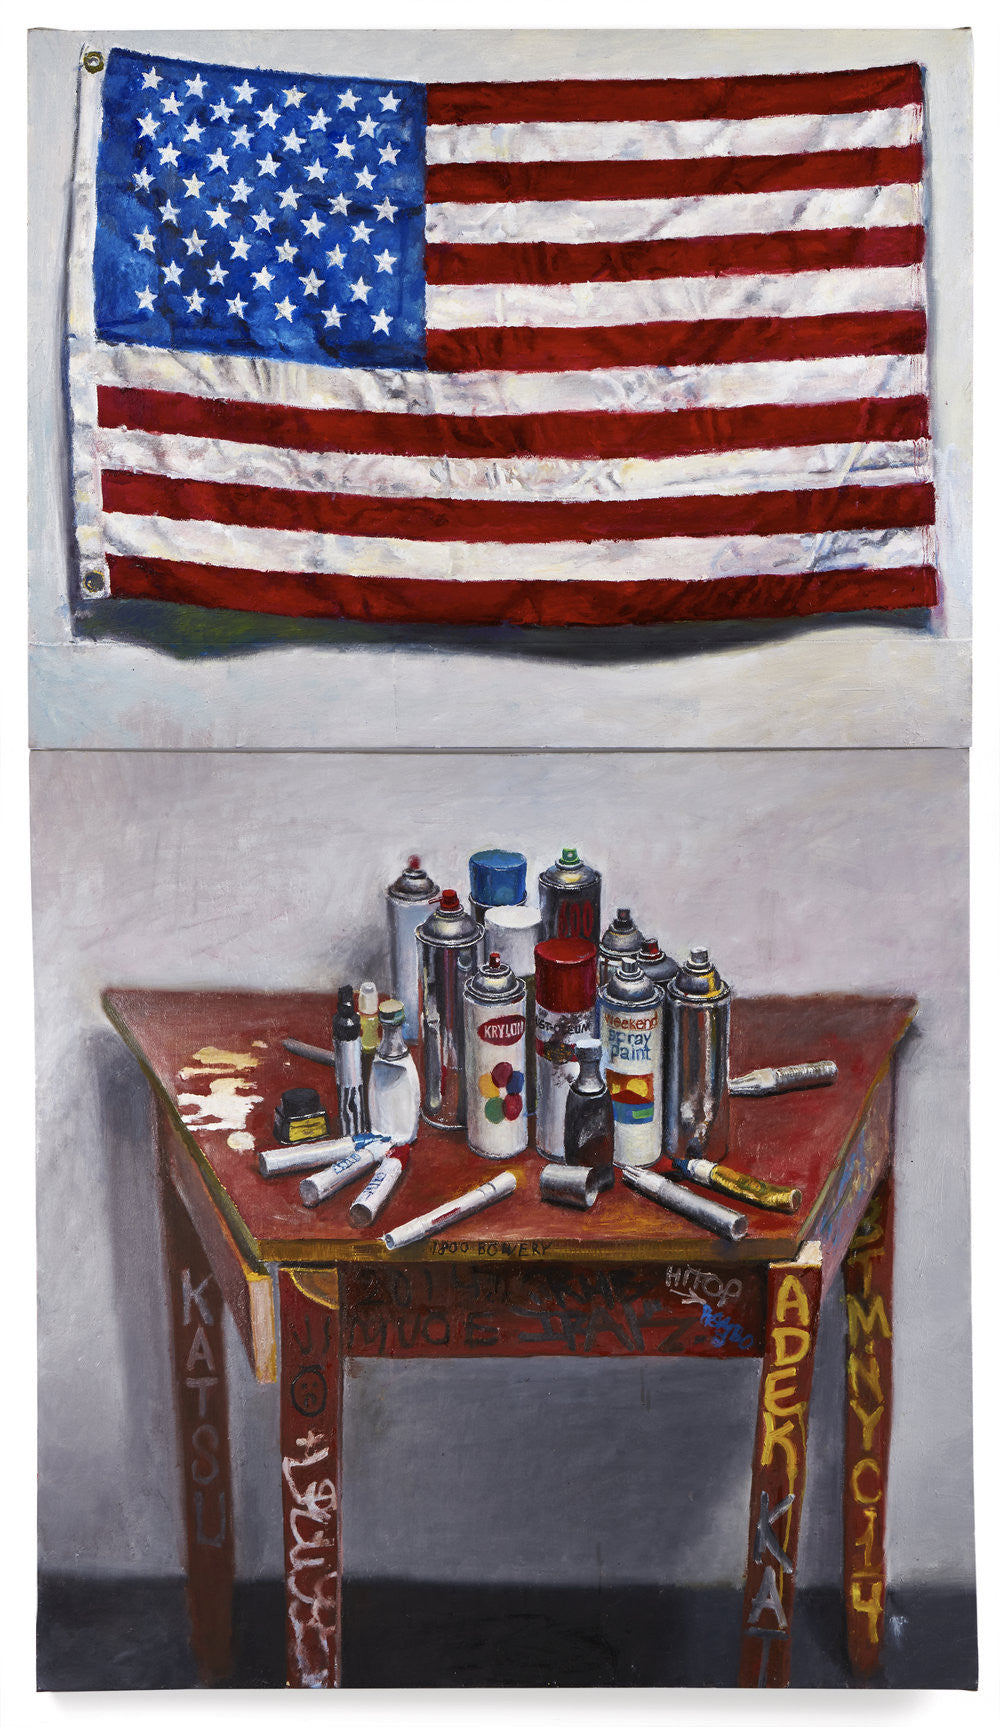 Jesse Edwards, "American Graffiti"